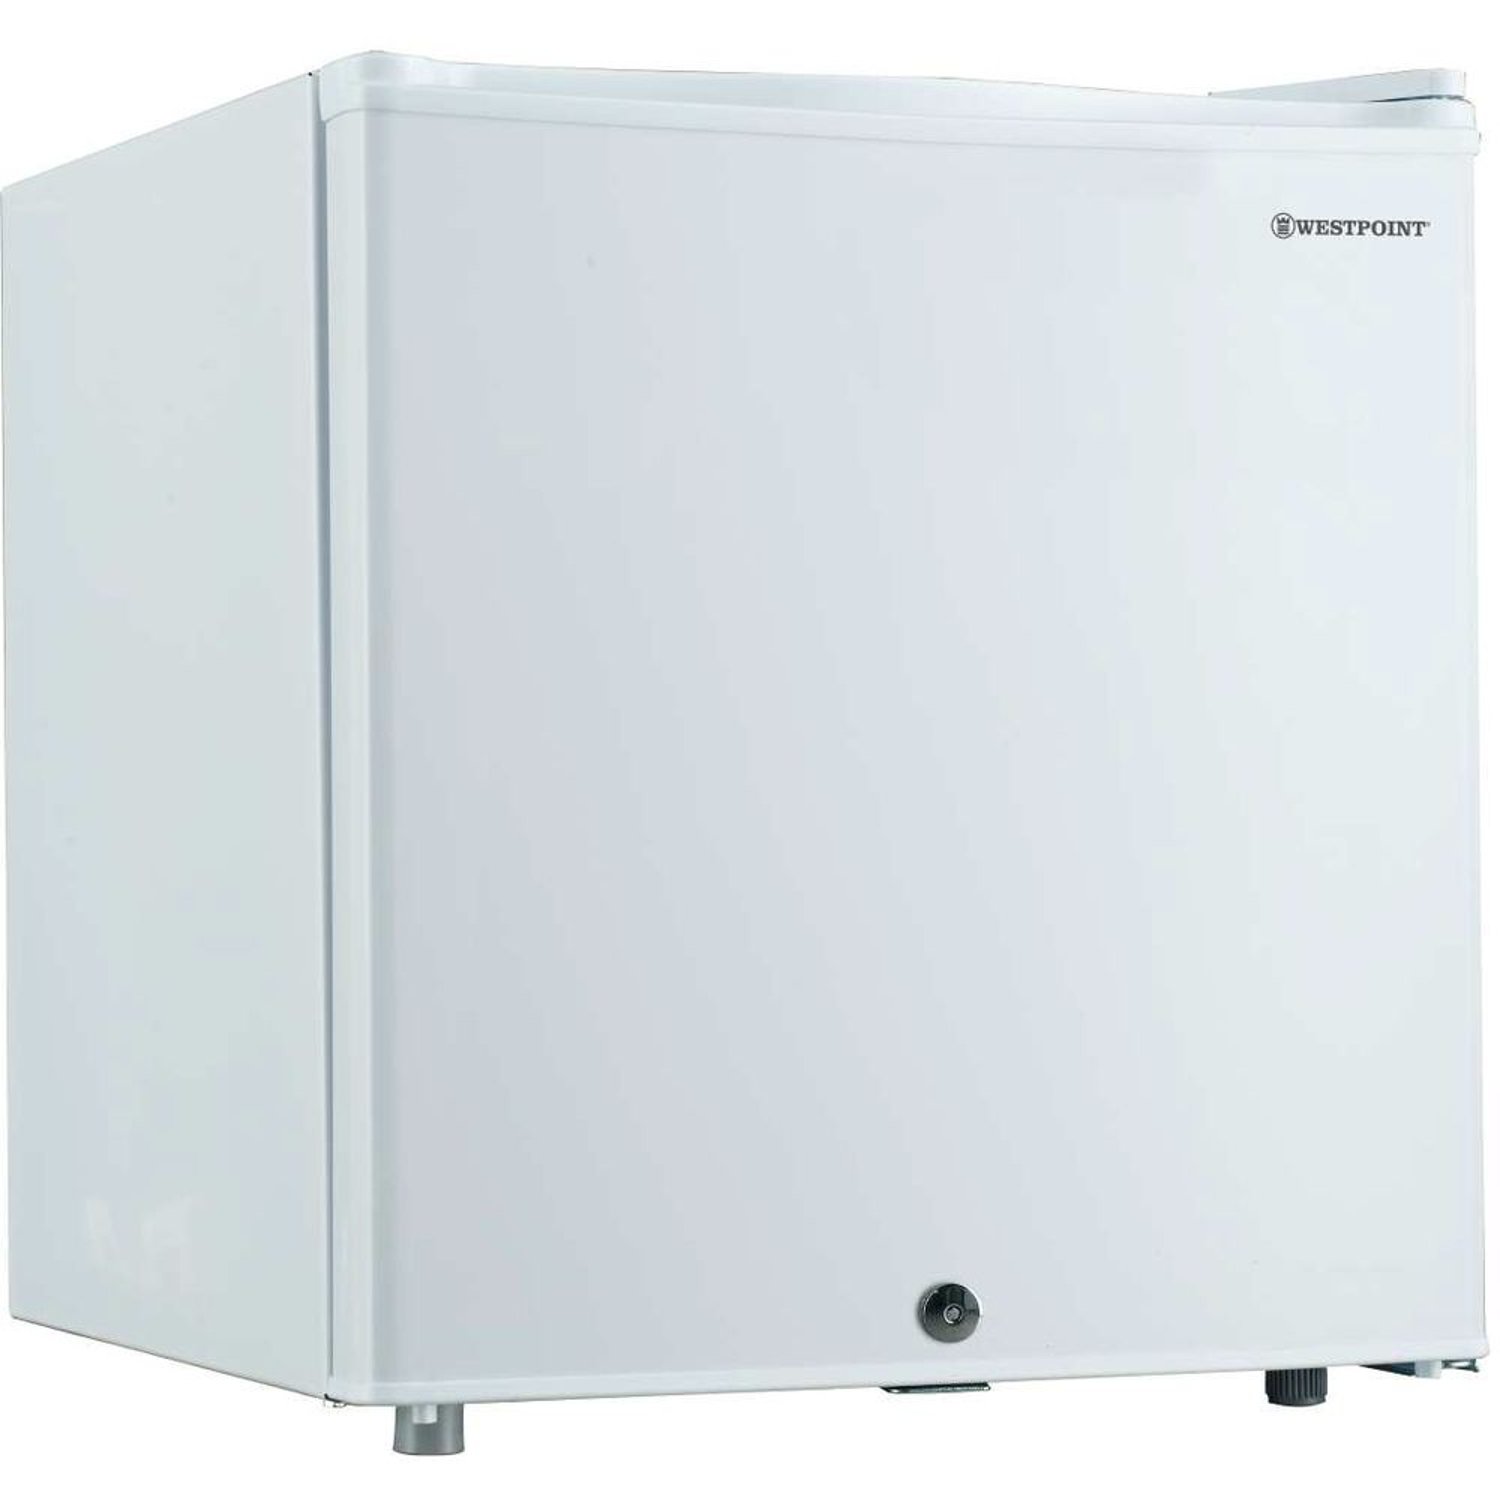 WestPoint 52L Defrost Refrigerator White WROK521E